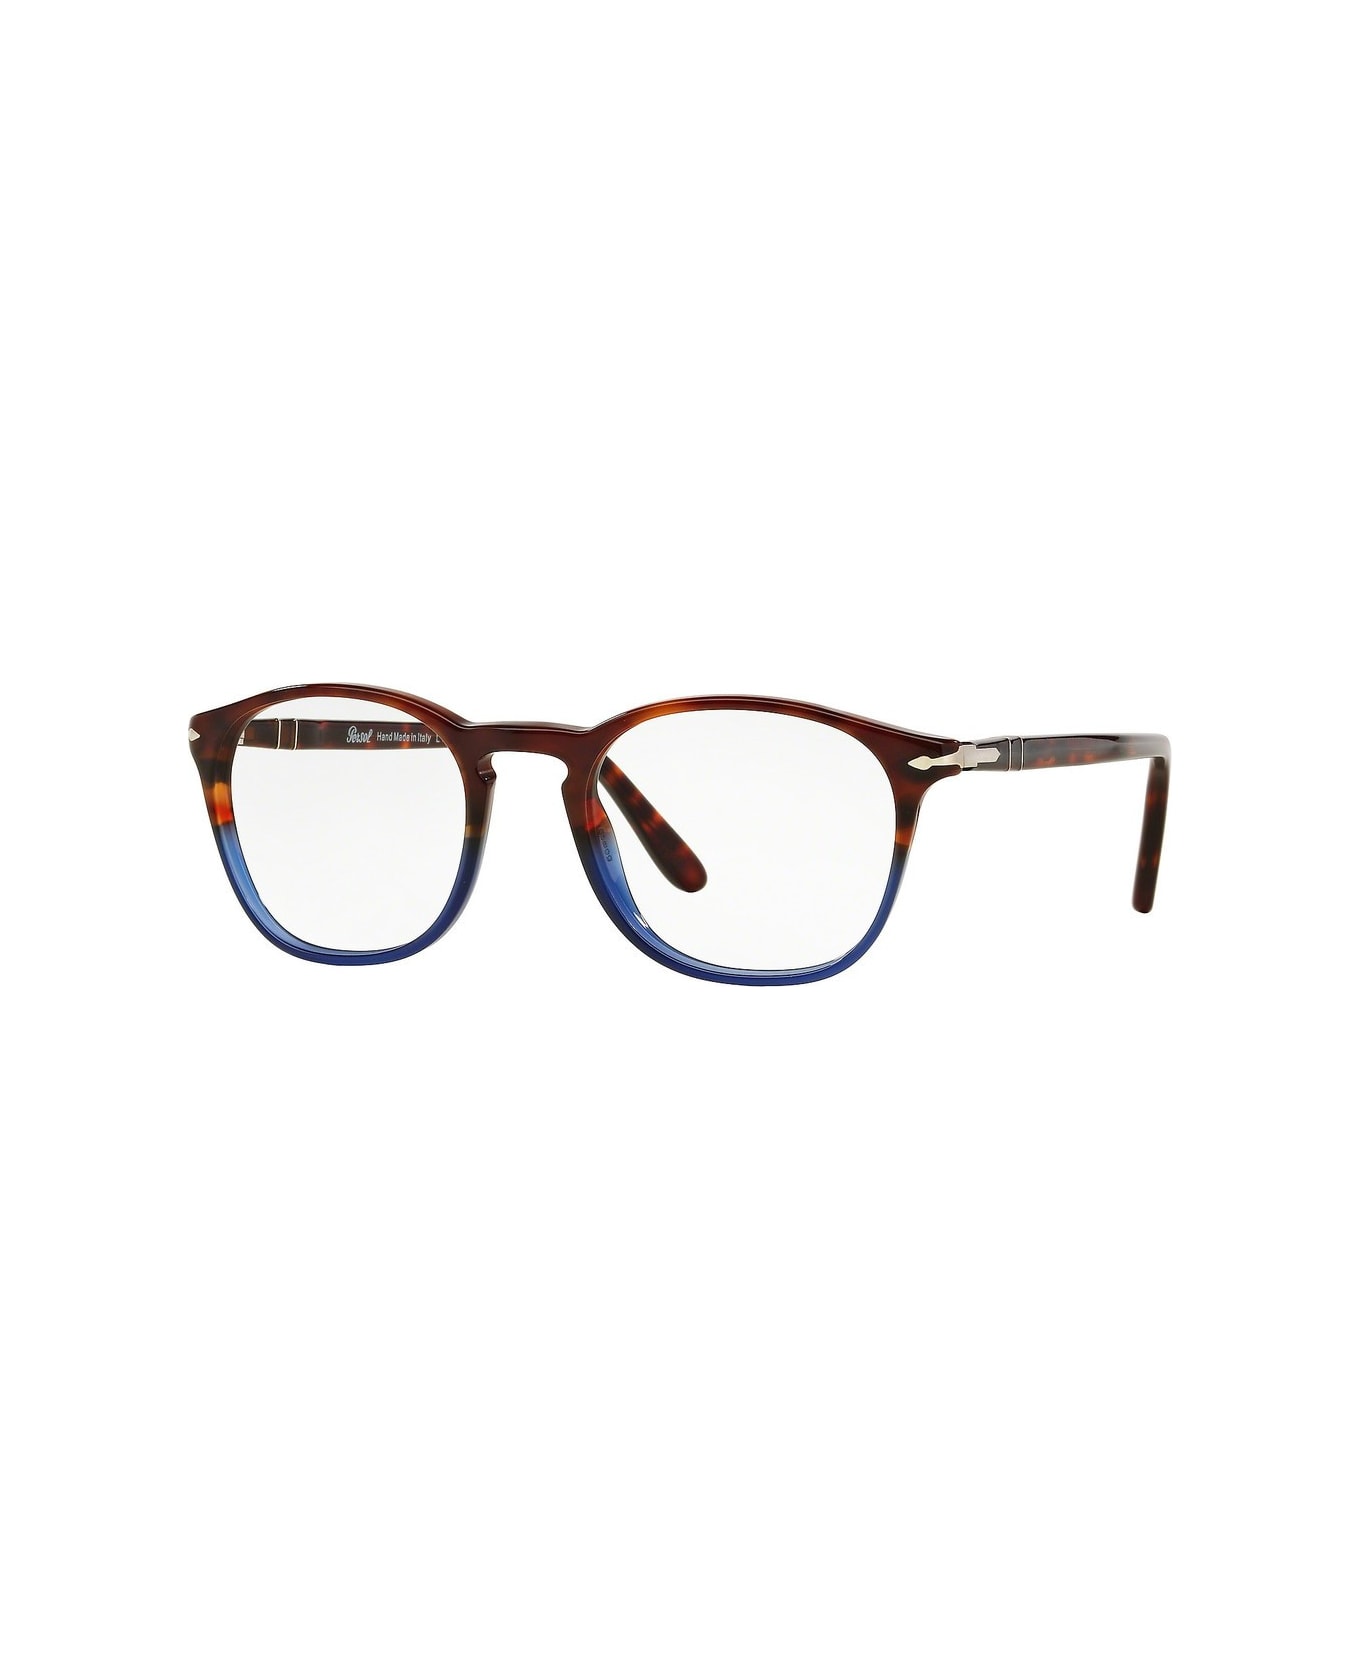 Persol Po3007v Glasses - Marrone